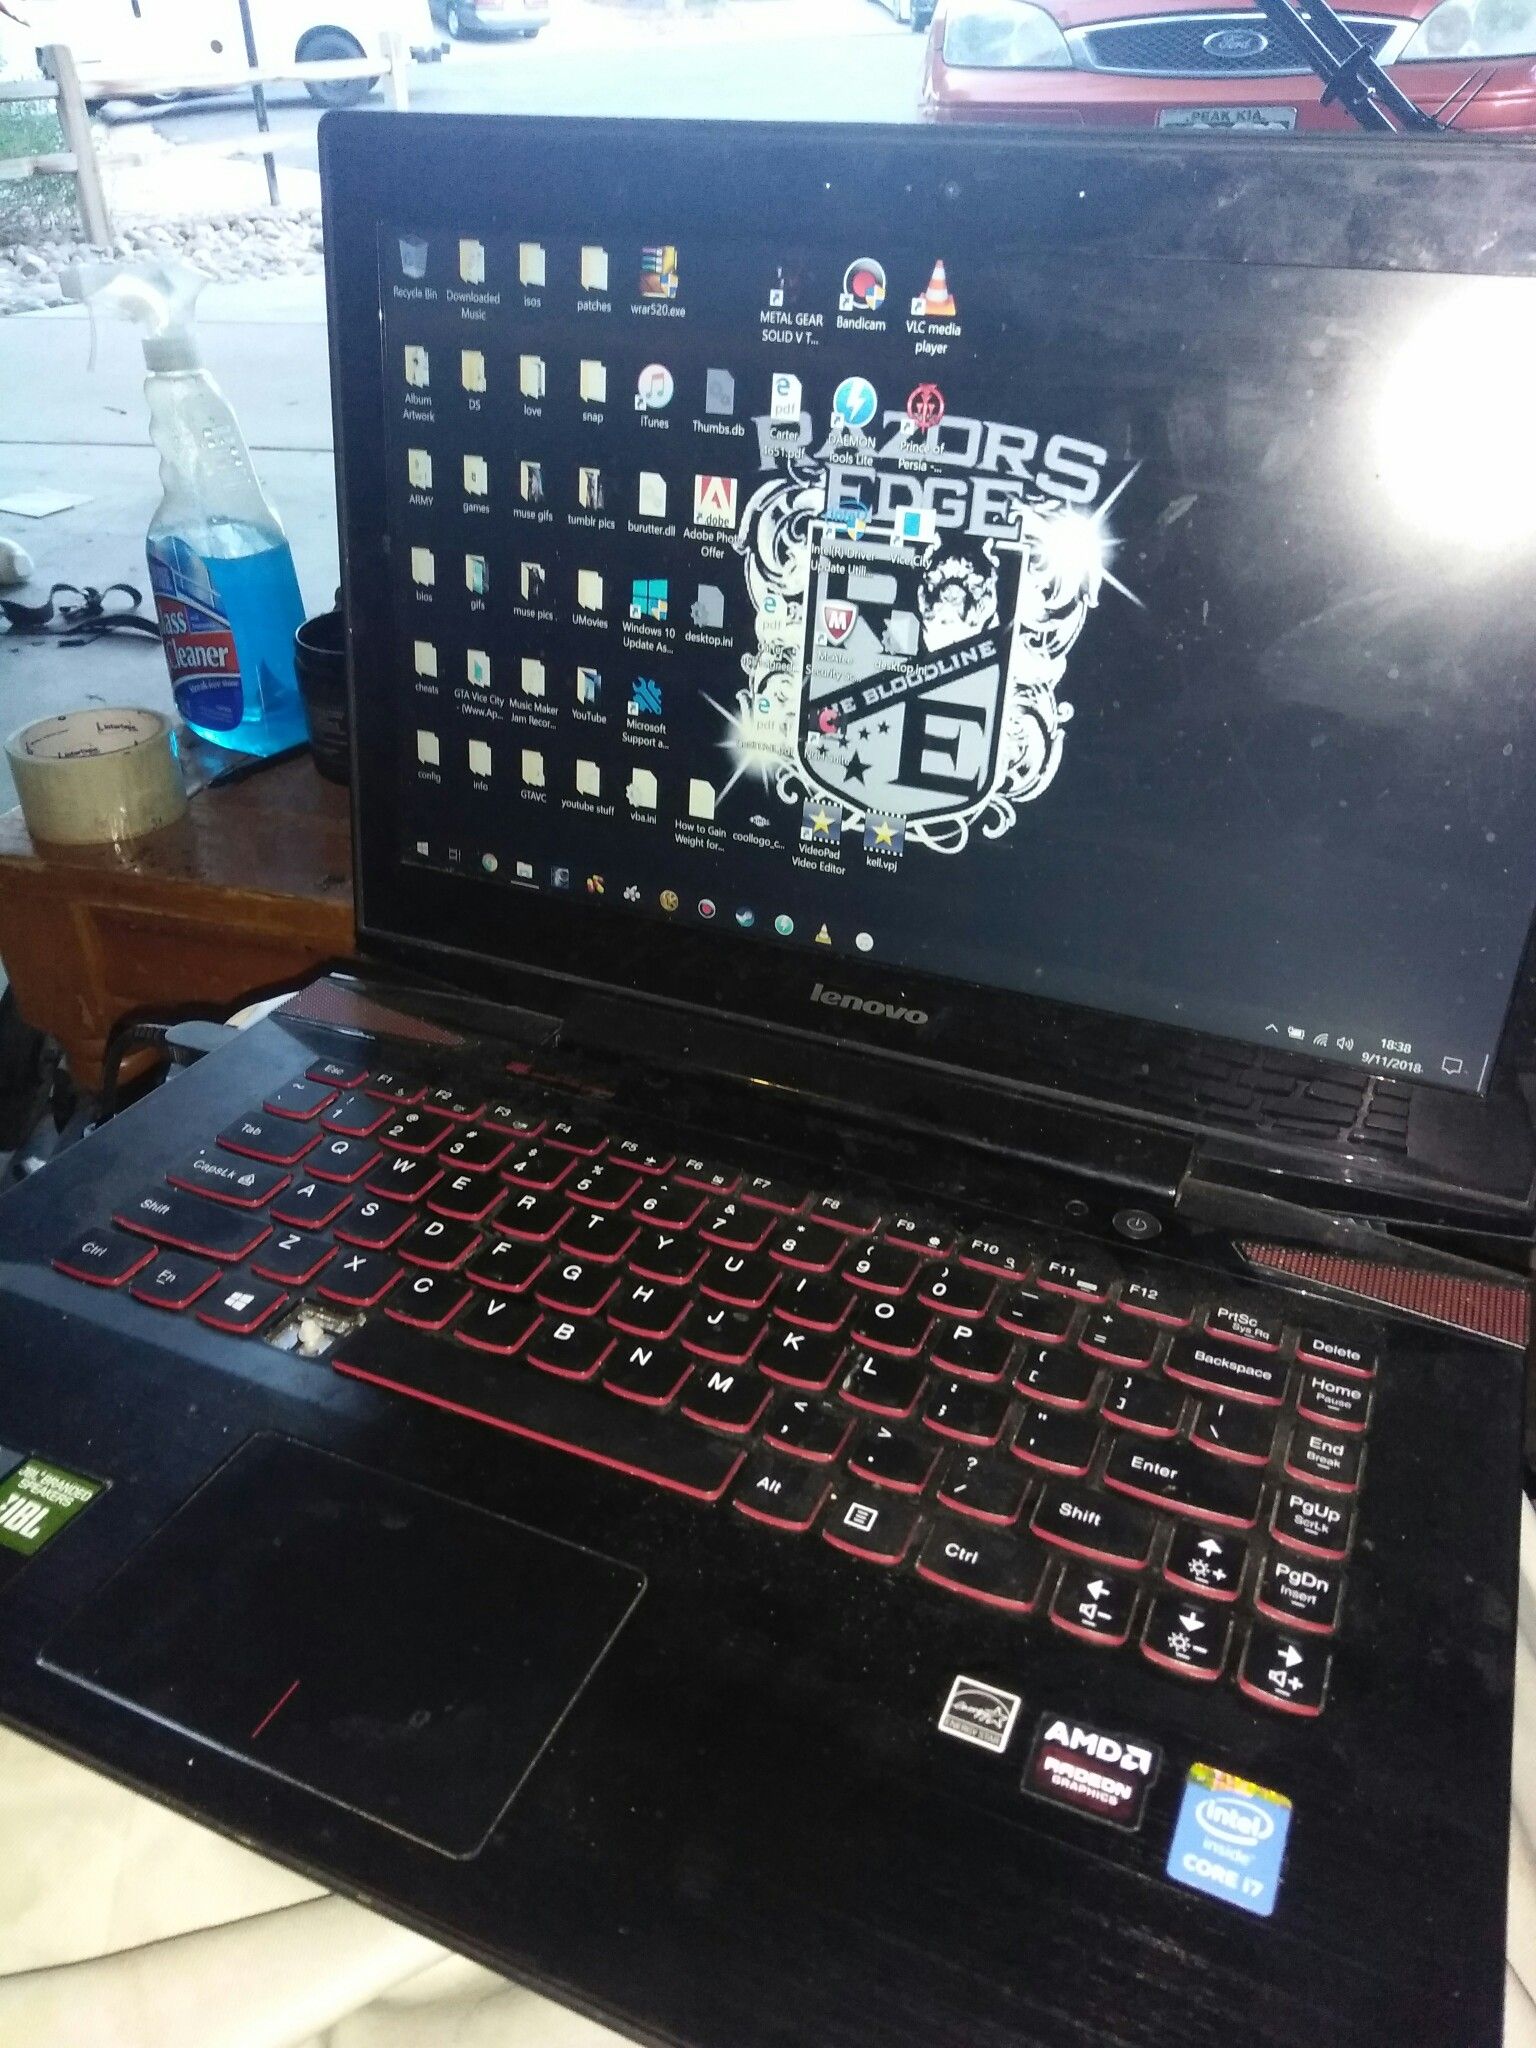 Lenovo Y40 Gaming Laptop